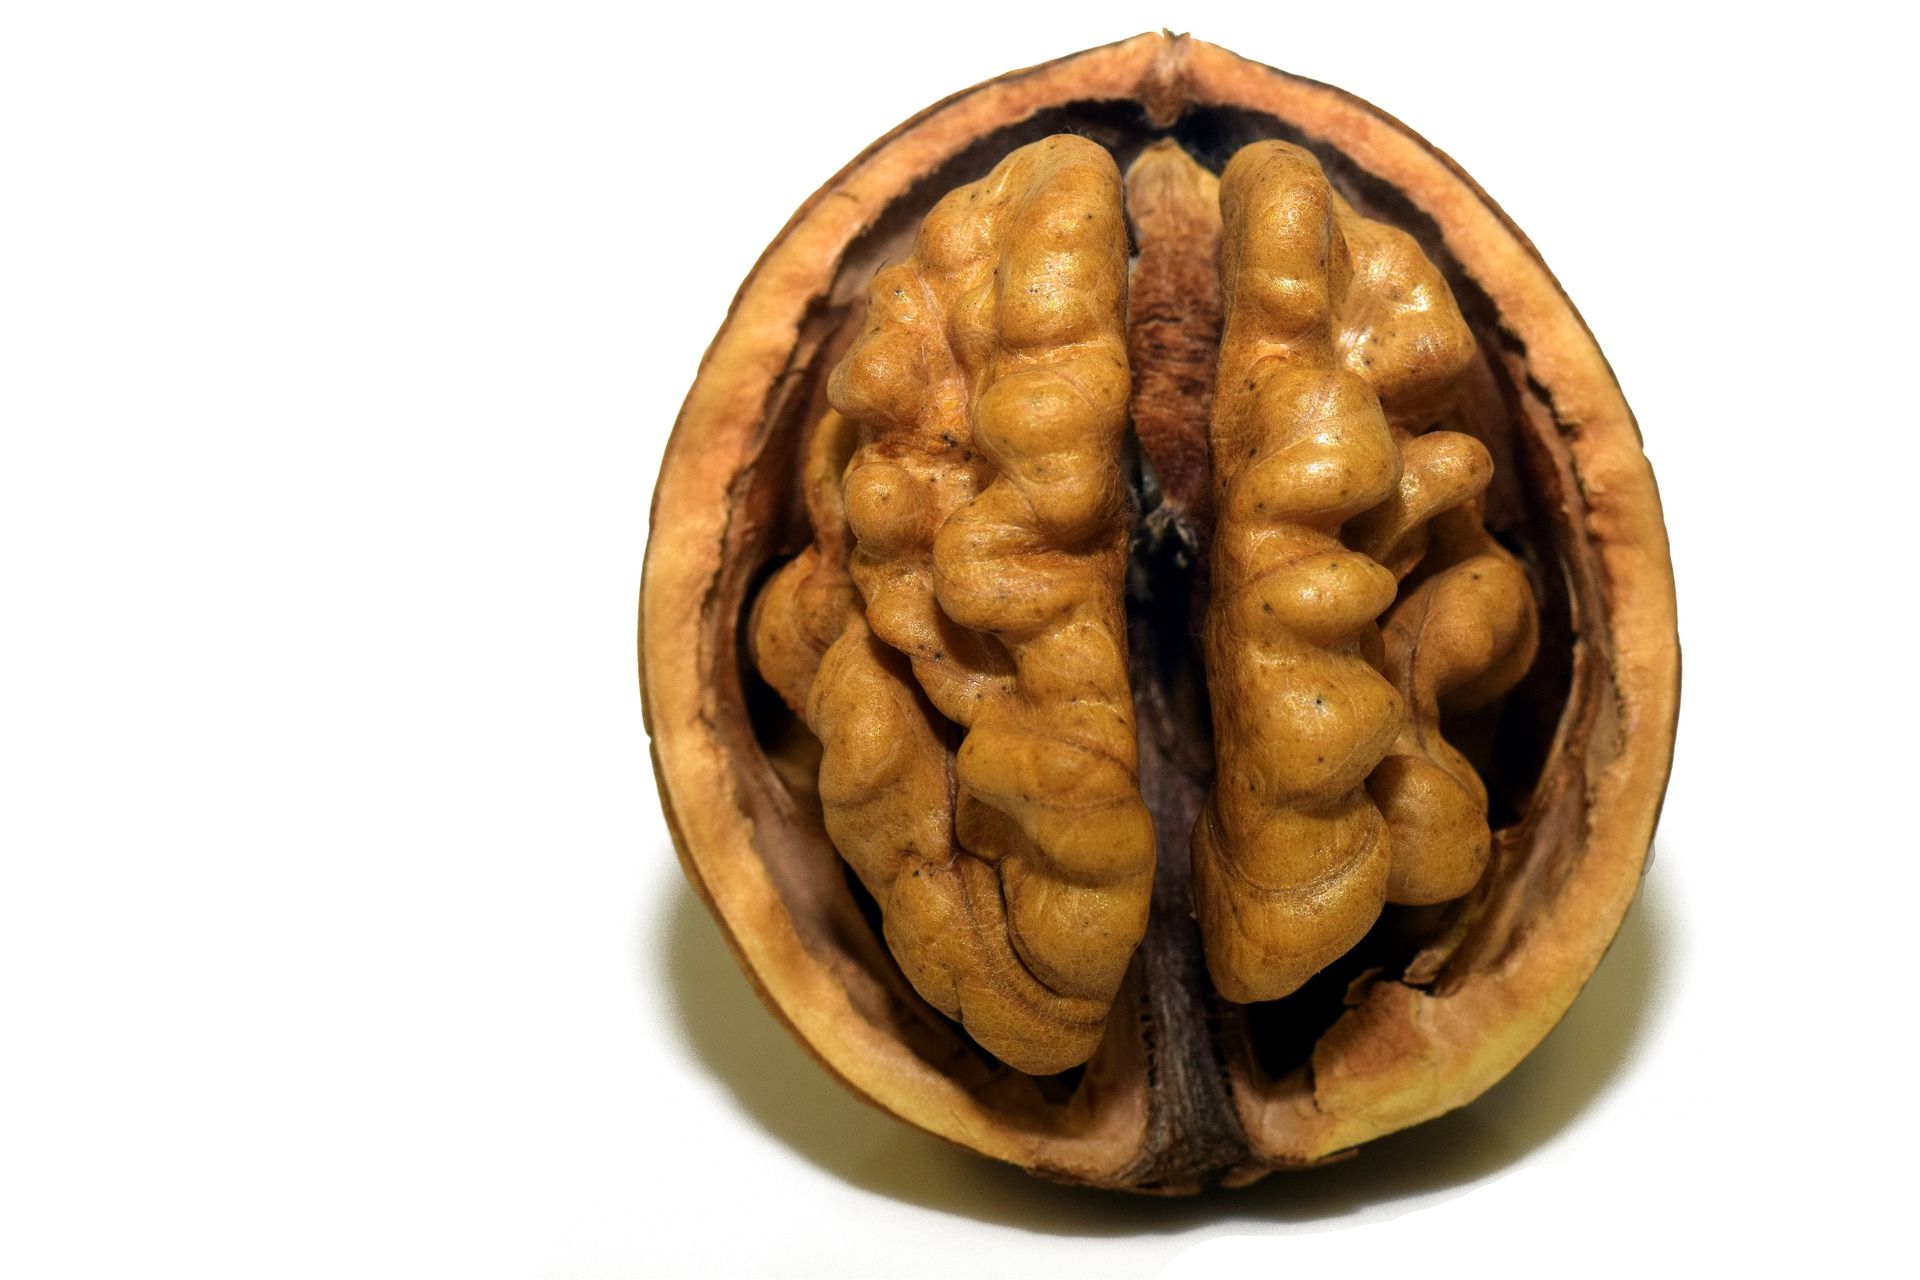 A walnut for optimal brain health